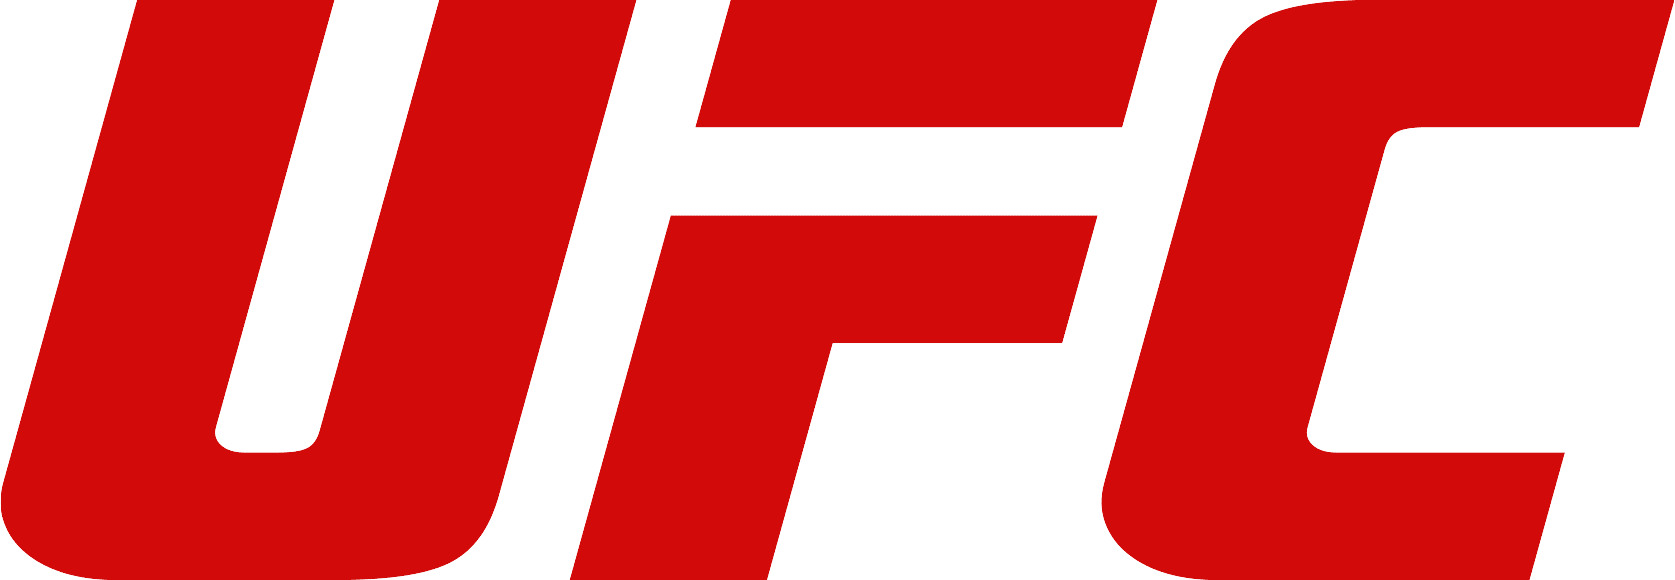 UFC_Logo-1-2.png